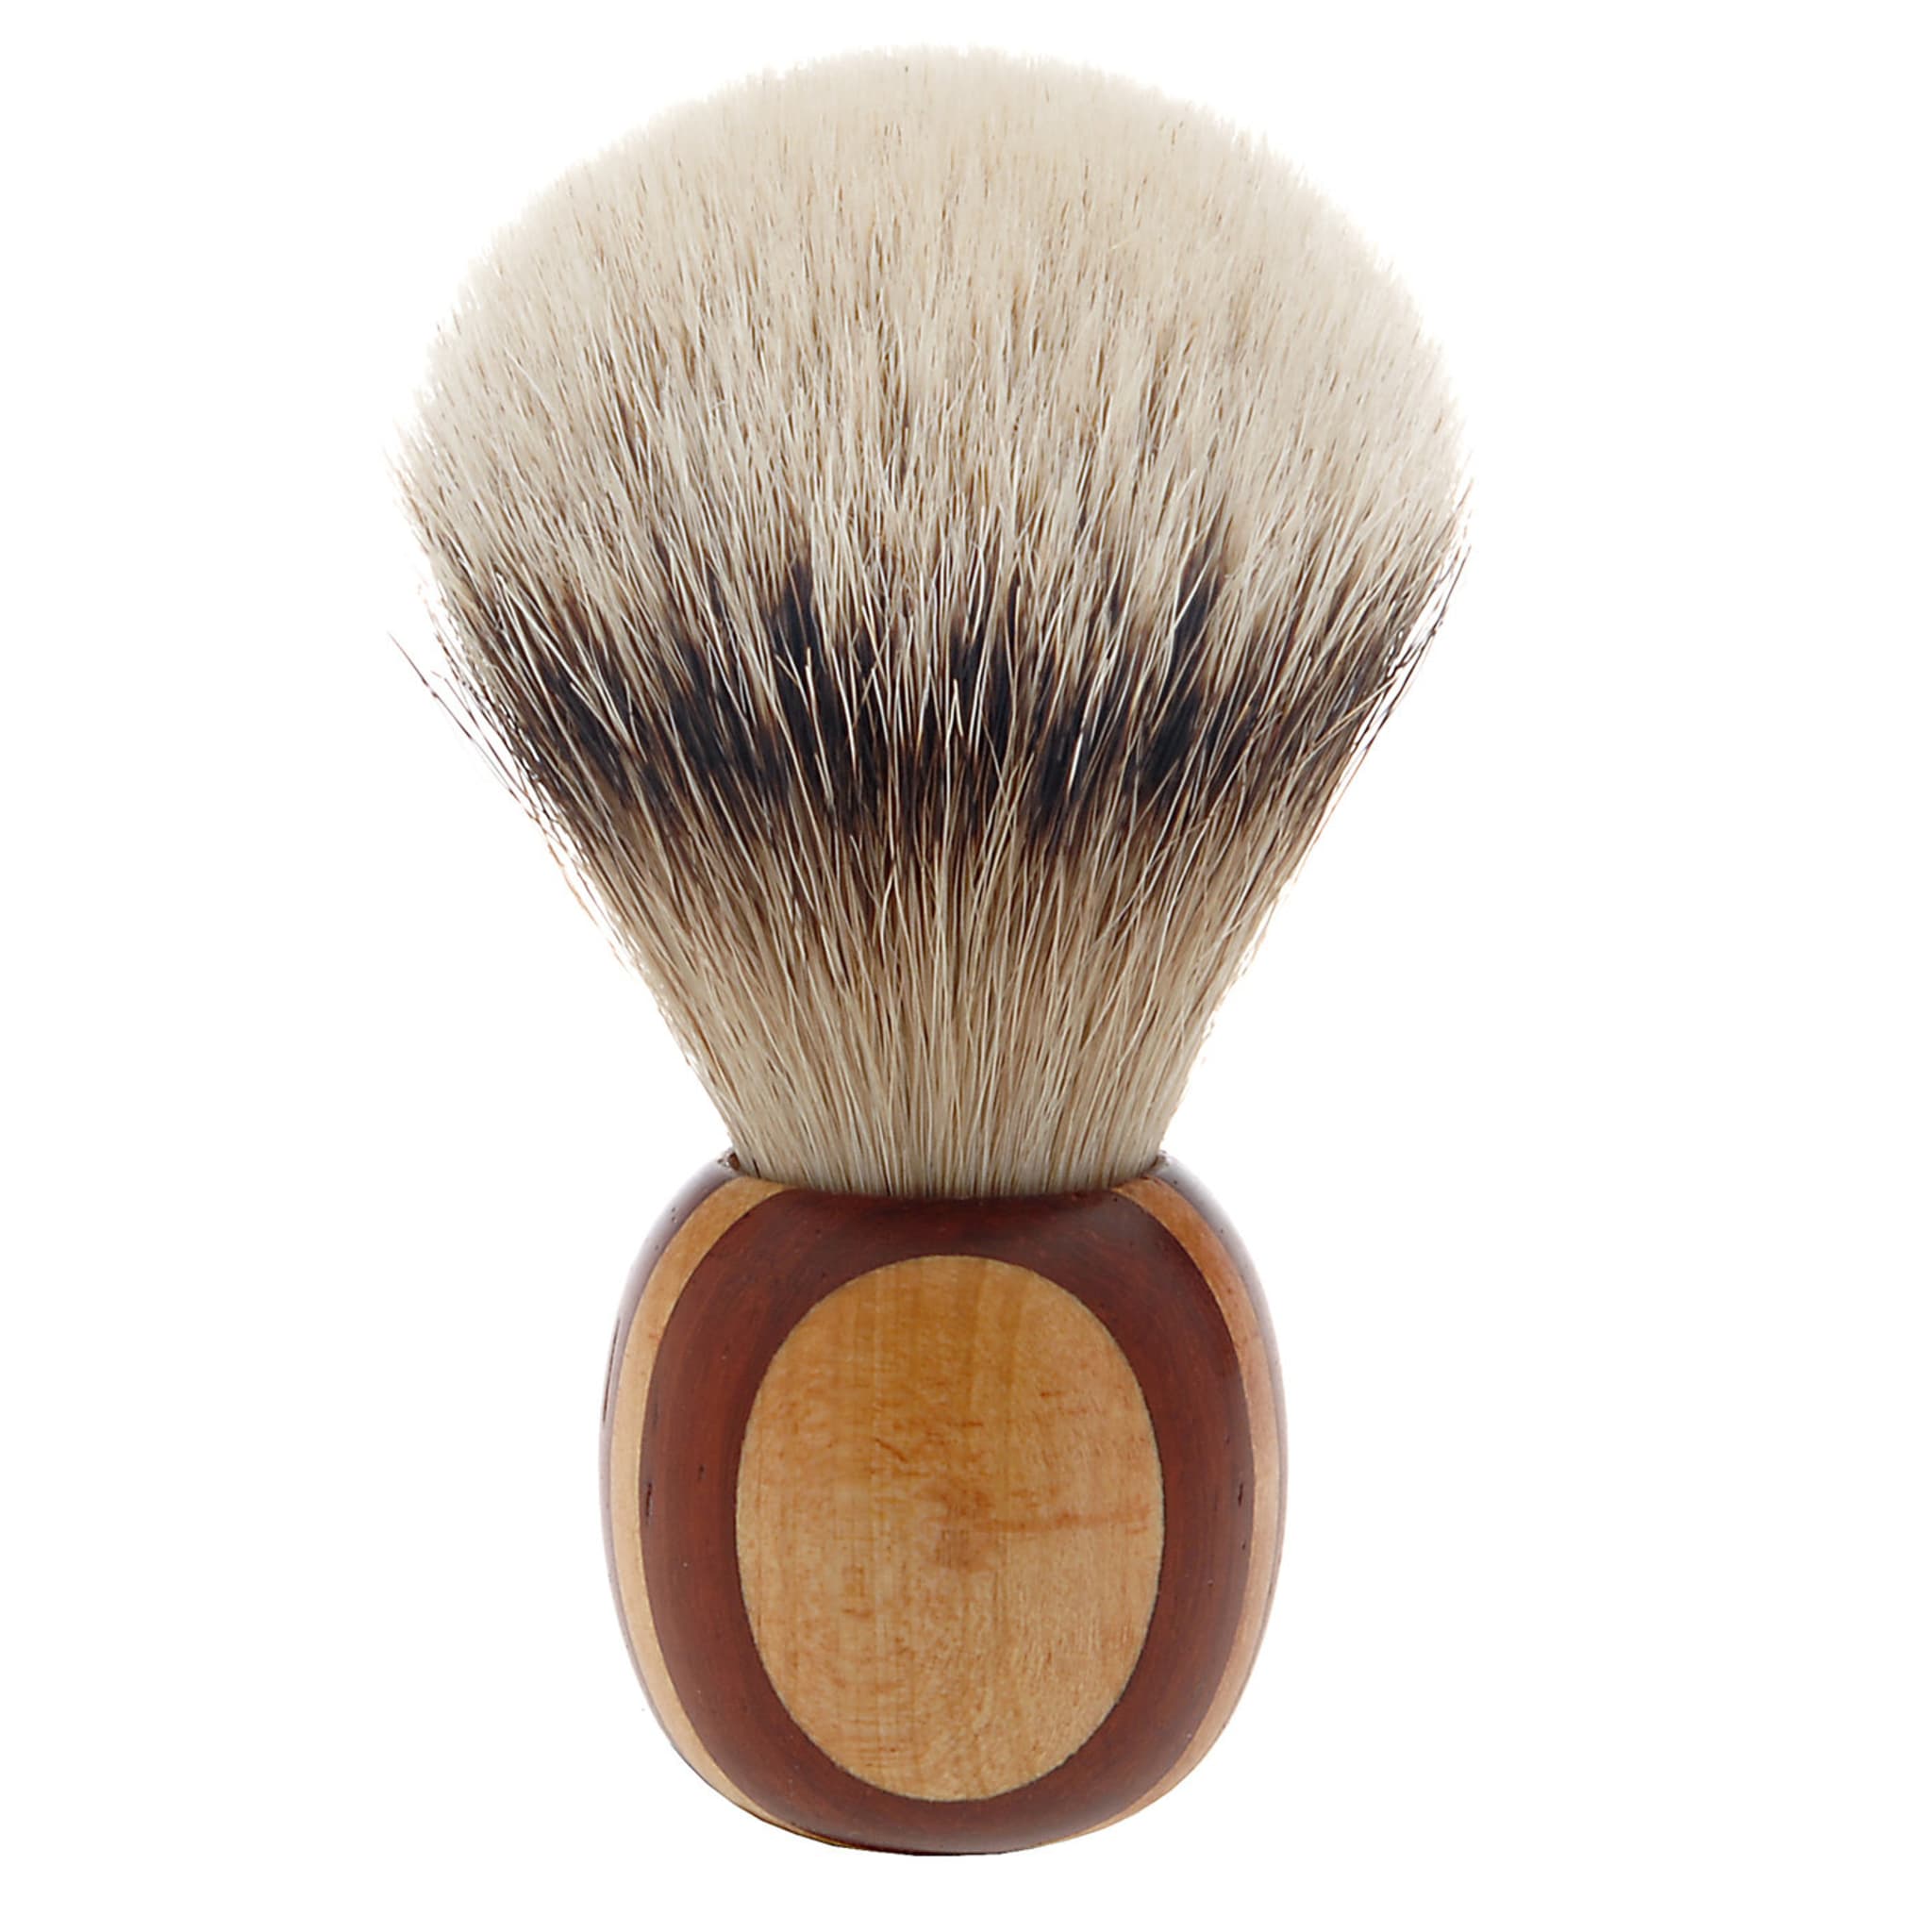 Short Shaving Brush in Maple and Padauk Wood - Alternative view 2